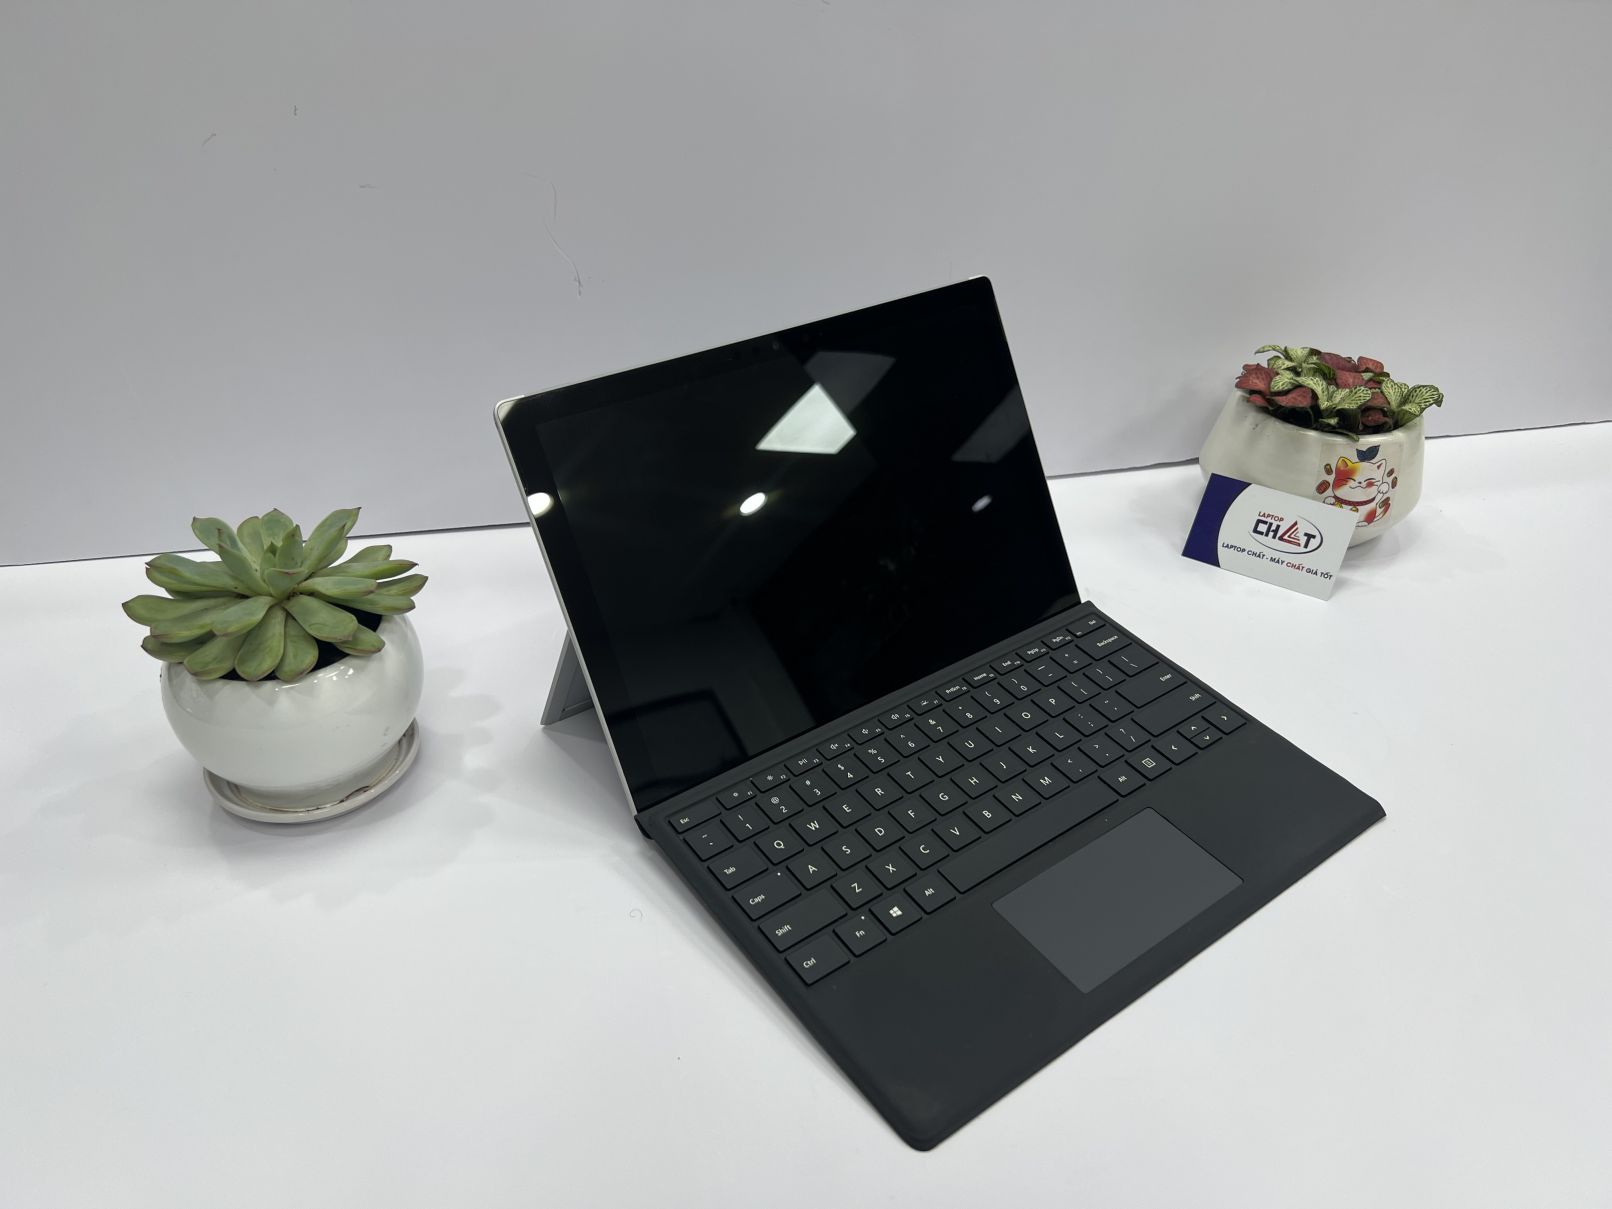 Top 10 Laptop 2in1 - màn cảm ứng, bàn phím có thể tháo rời, hàng xách tay Mỹ, giá rẻ  LAPTOP CHẤT